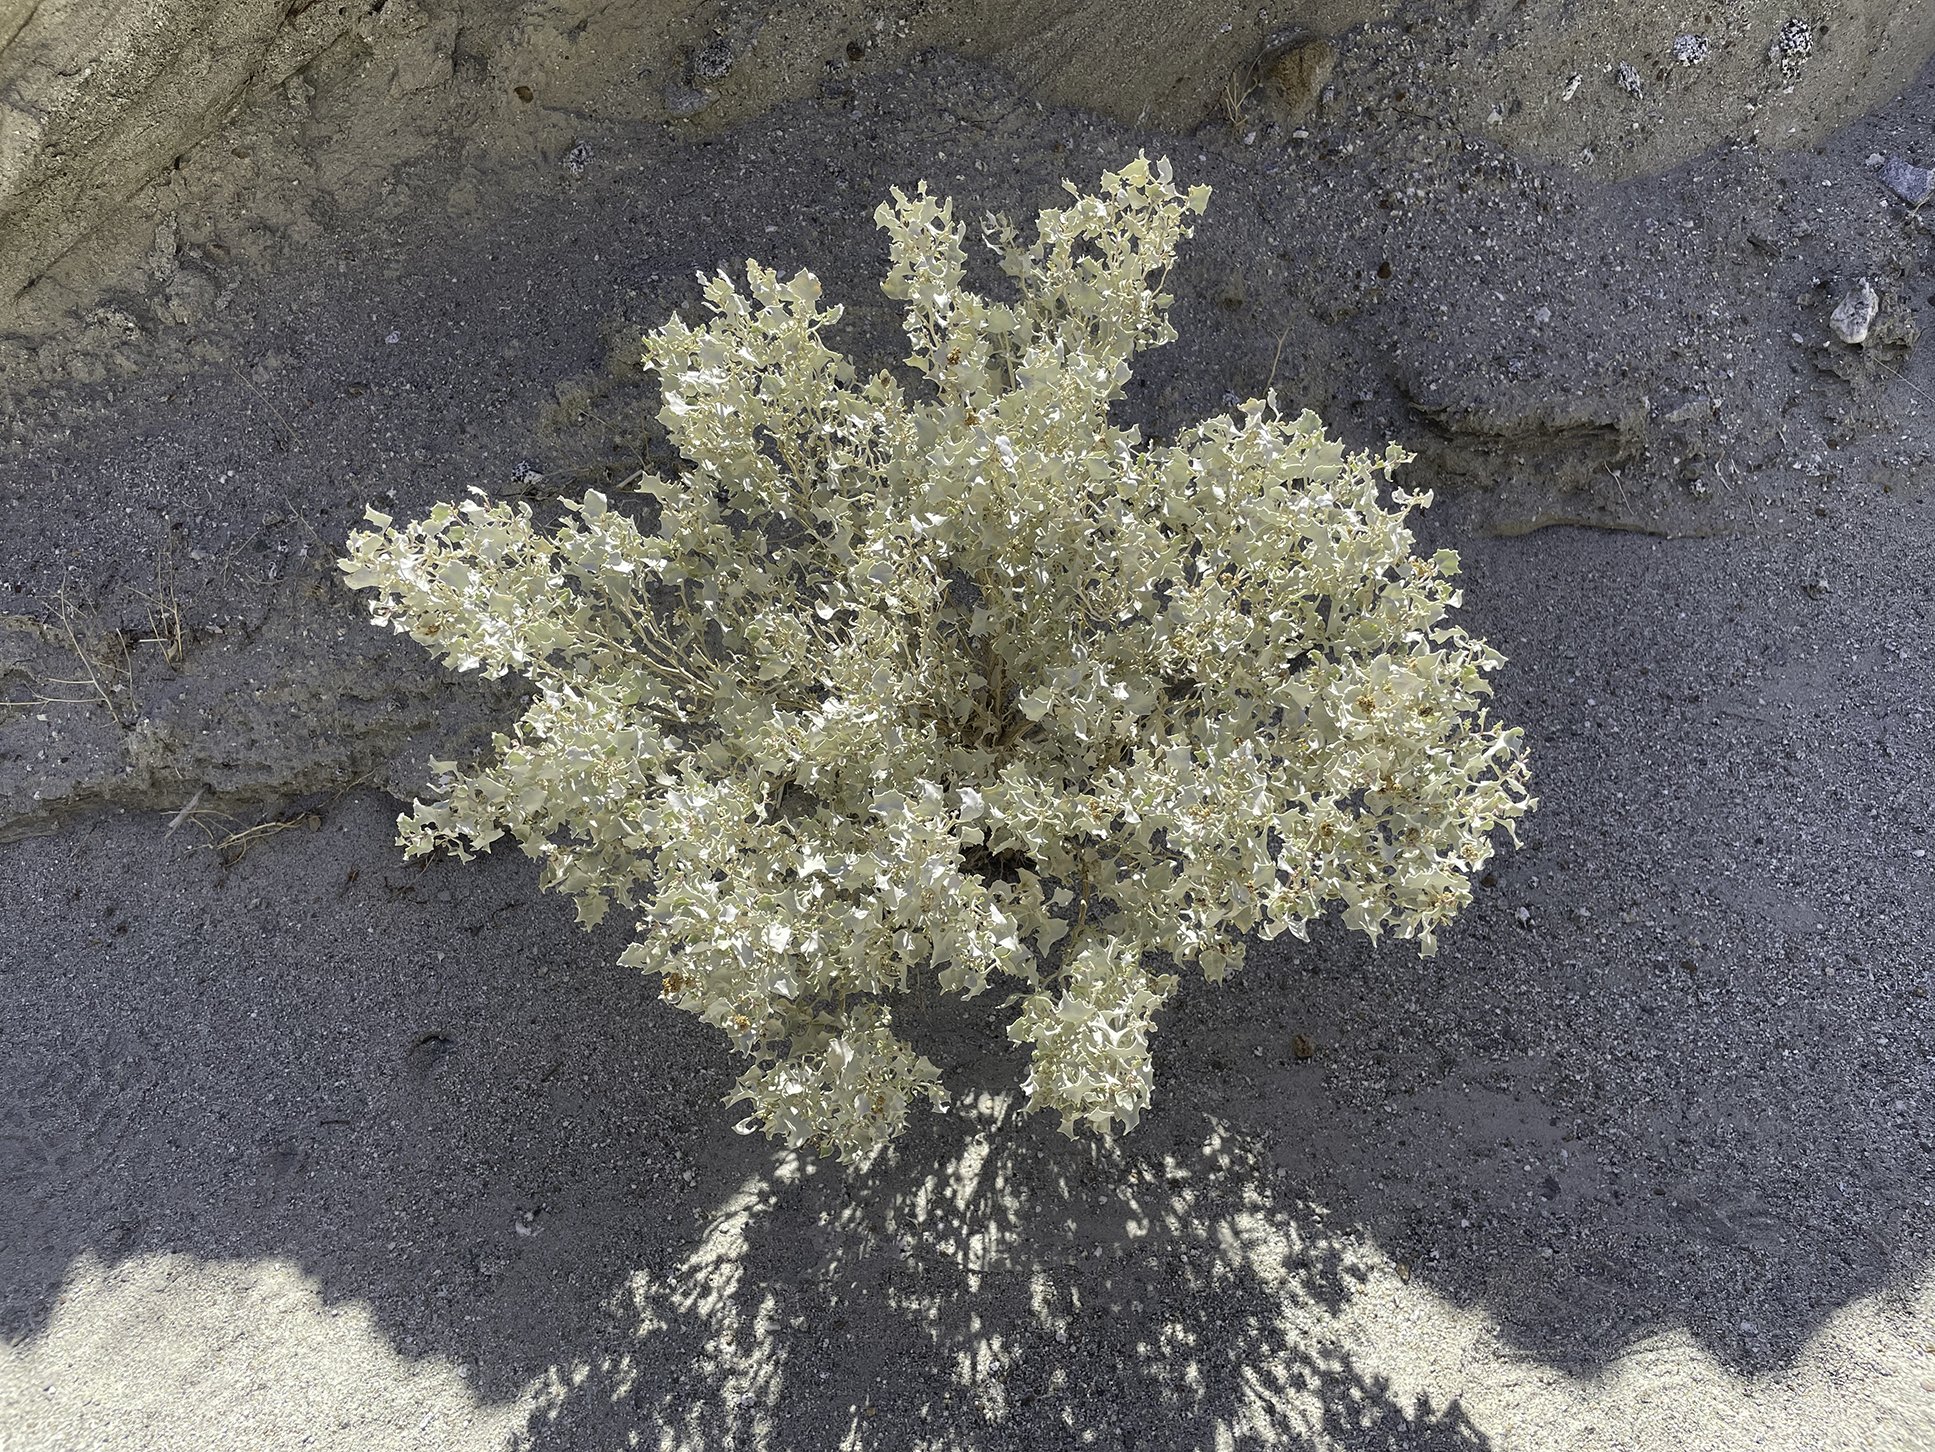 Unknown desert plant